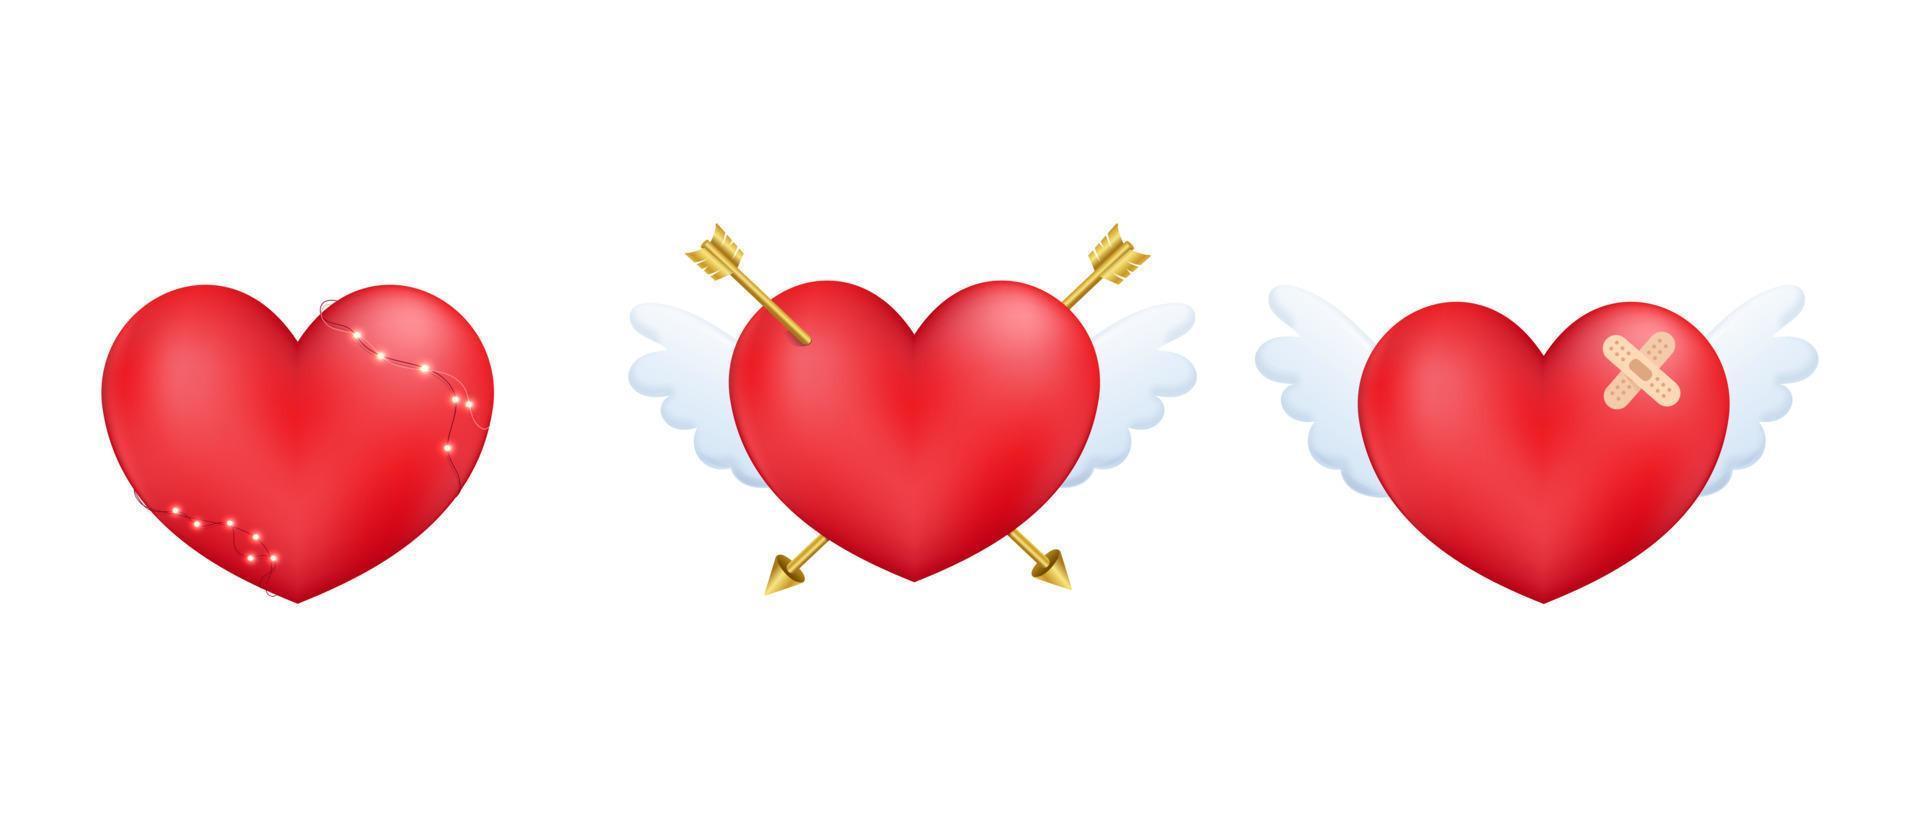 reeks van 3d harten met Cupido pijl en vleugel. Valentijnsdag dag decoratief element voor bruiloft liefde kaart, uitnodiging achtergrond. vector illustratie